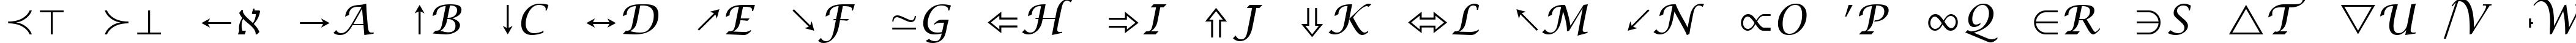 Пример написания английского алфавита шрифтом Lucida Bright Math Symbol